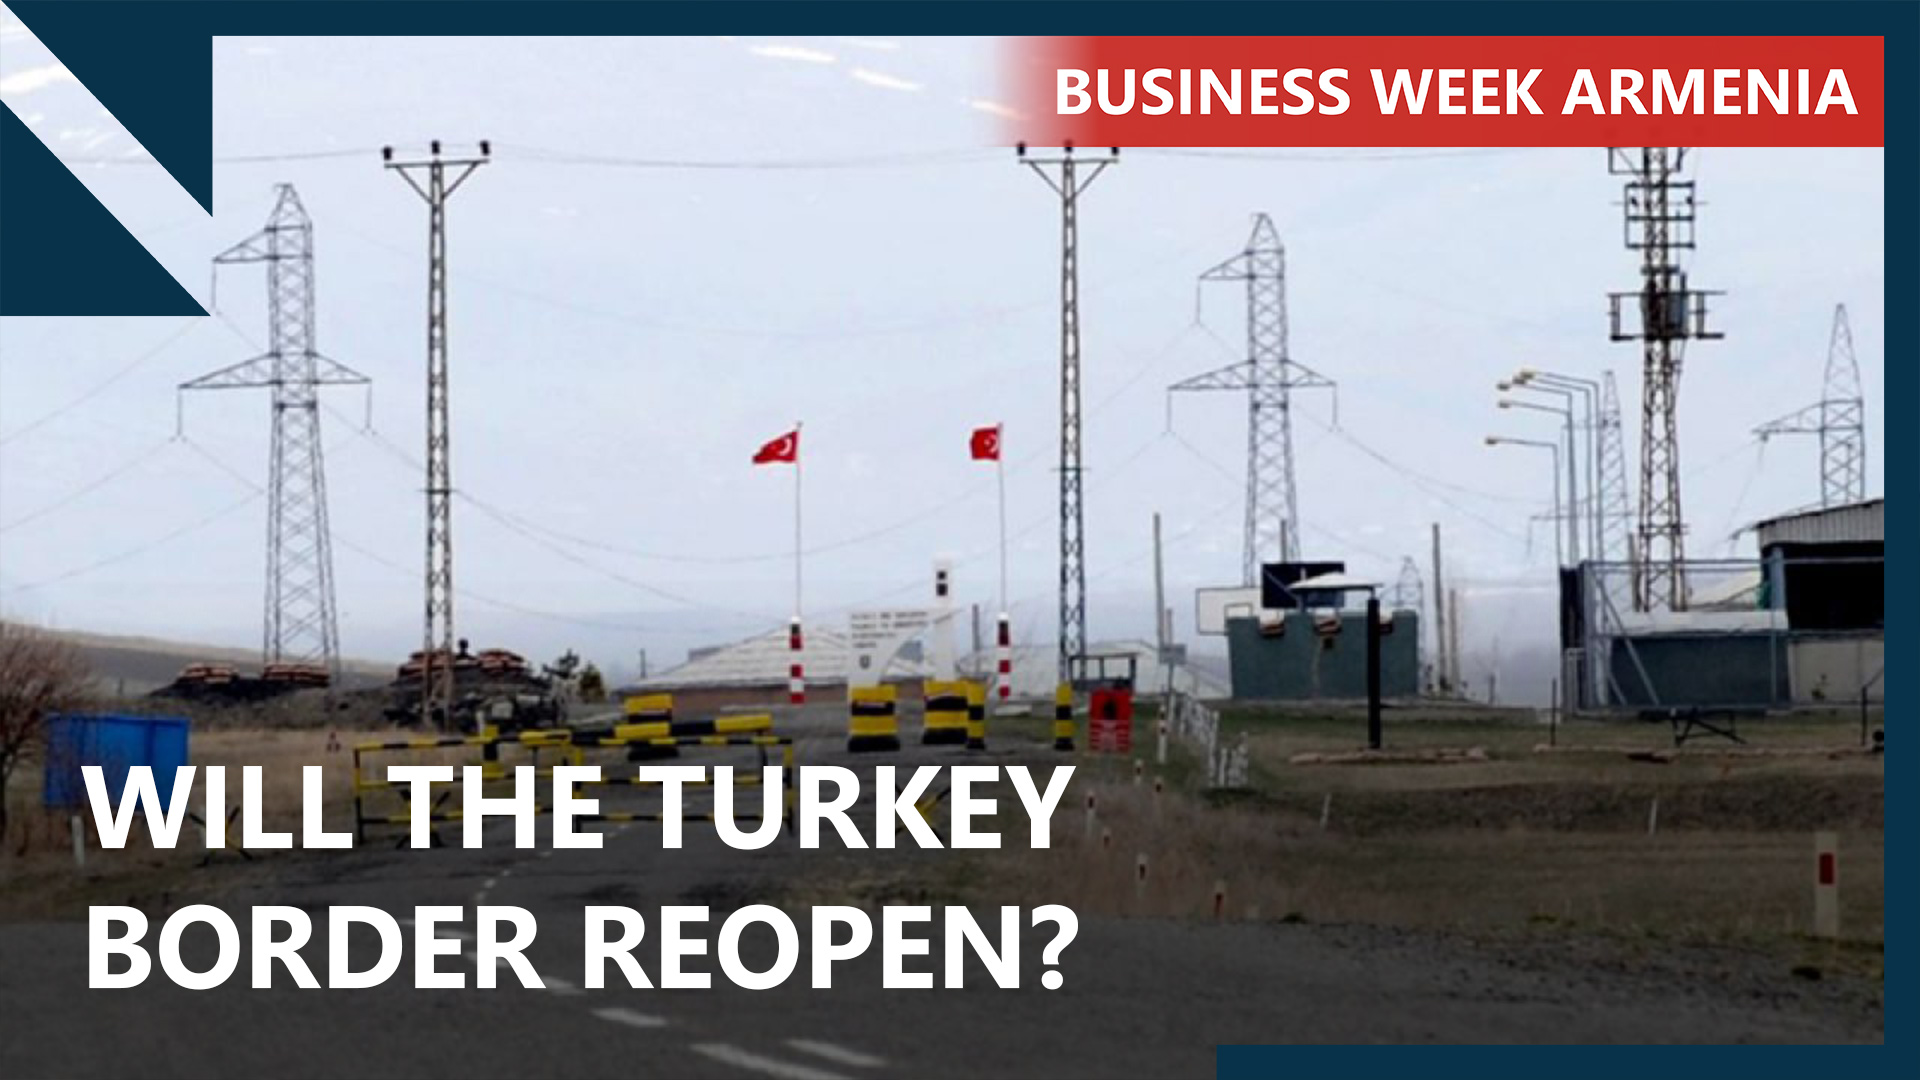 Business Week Armenia: Preparatory work underway on partial border reopening with Turkey